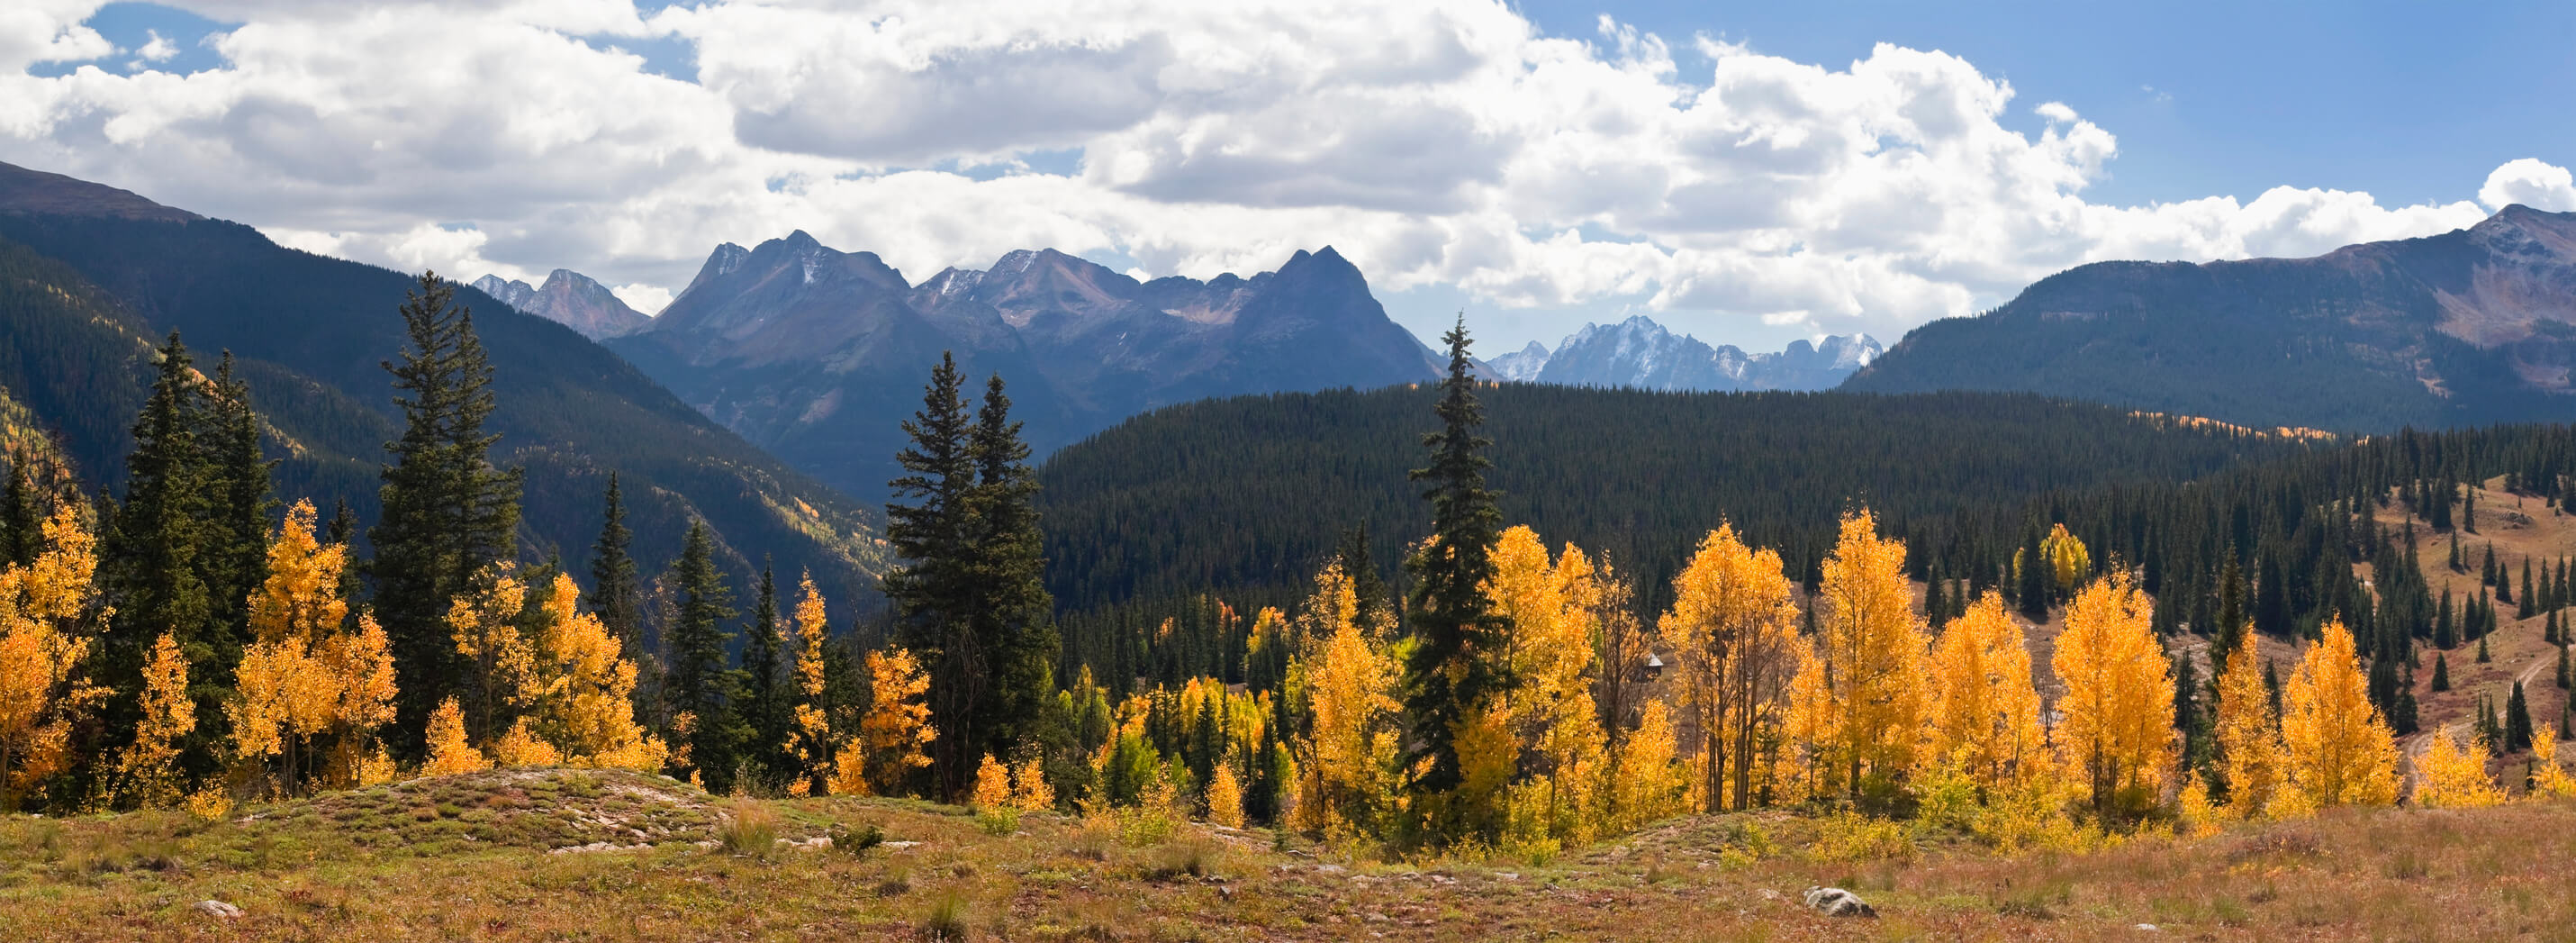 colorado mountains in fall